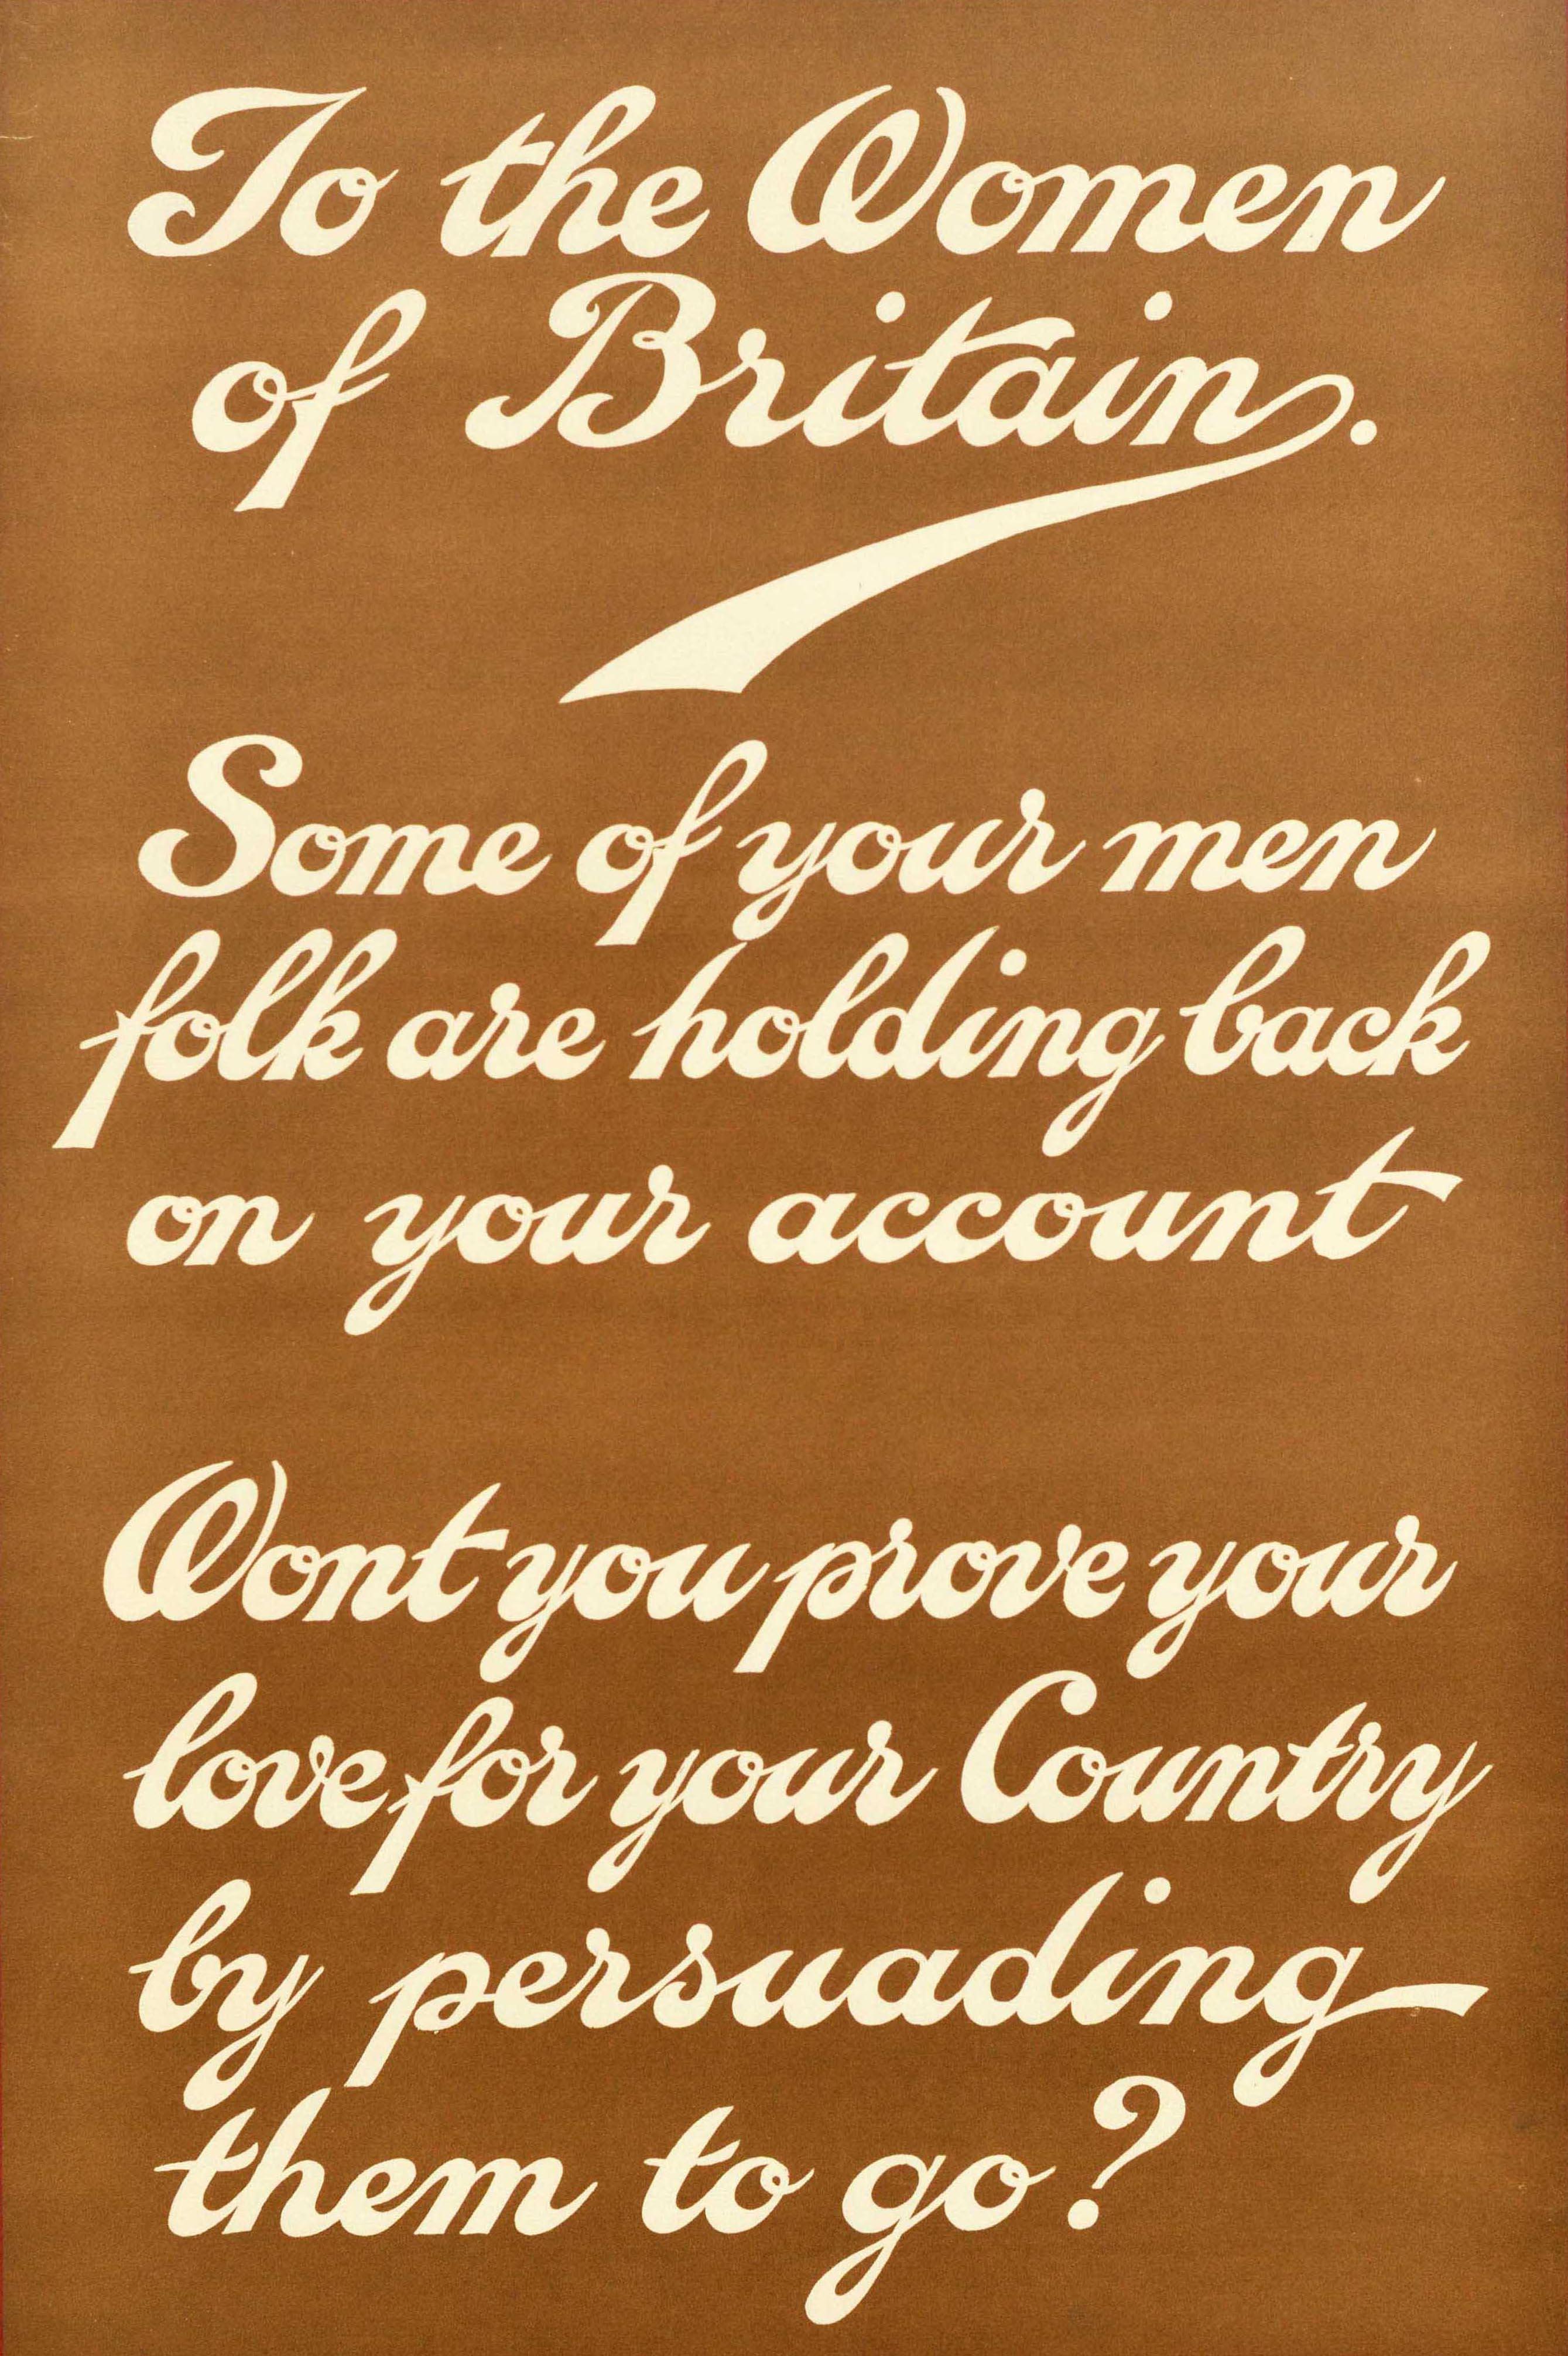 Originales antikes Rekrutierungsplakat für den Ersten Weltkrieg mit fettgedrucktem, stilisiertem Text innerhalb eines roten Rahmens, der lautet: 